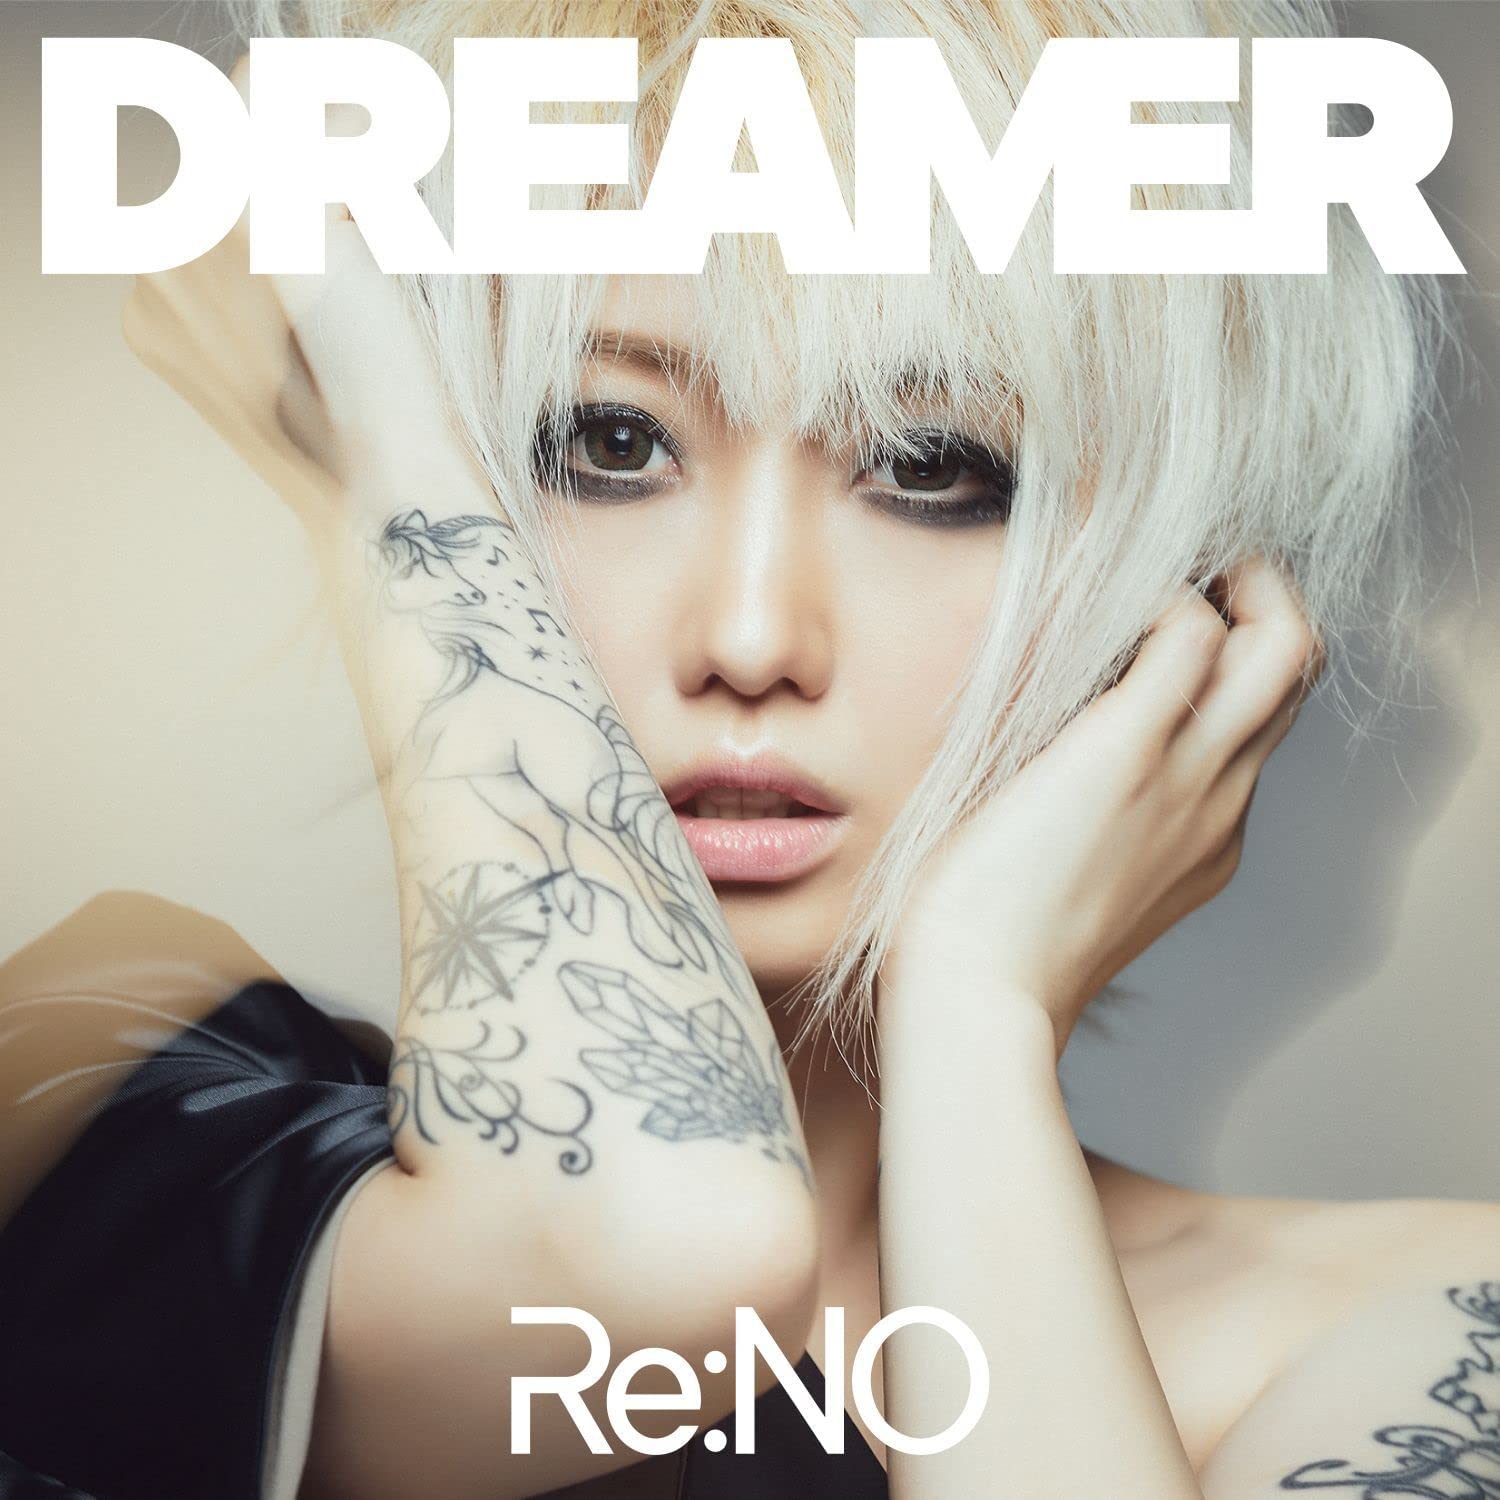 Re:NO/Dreamer